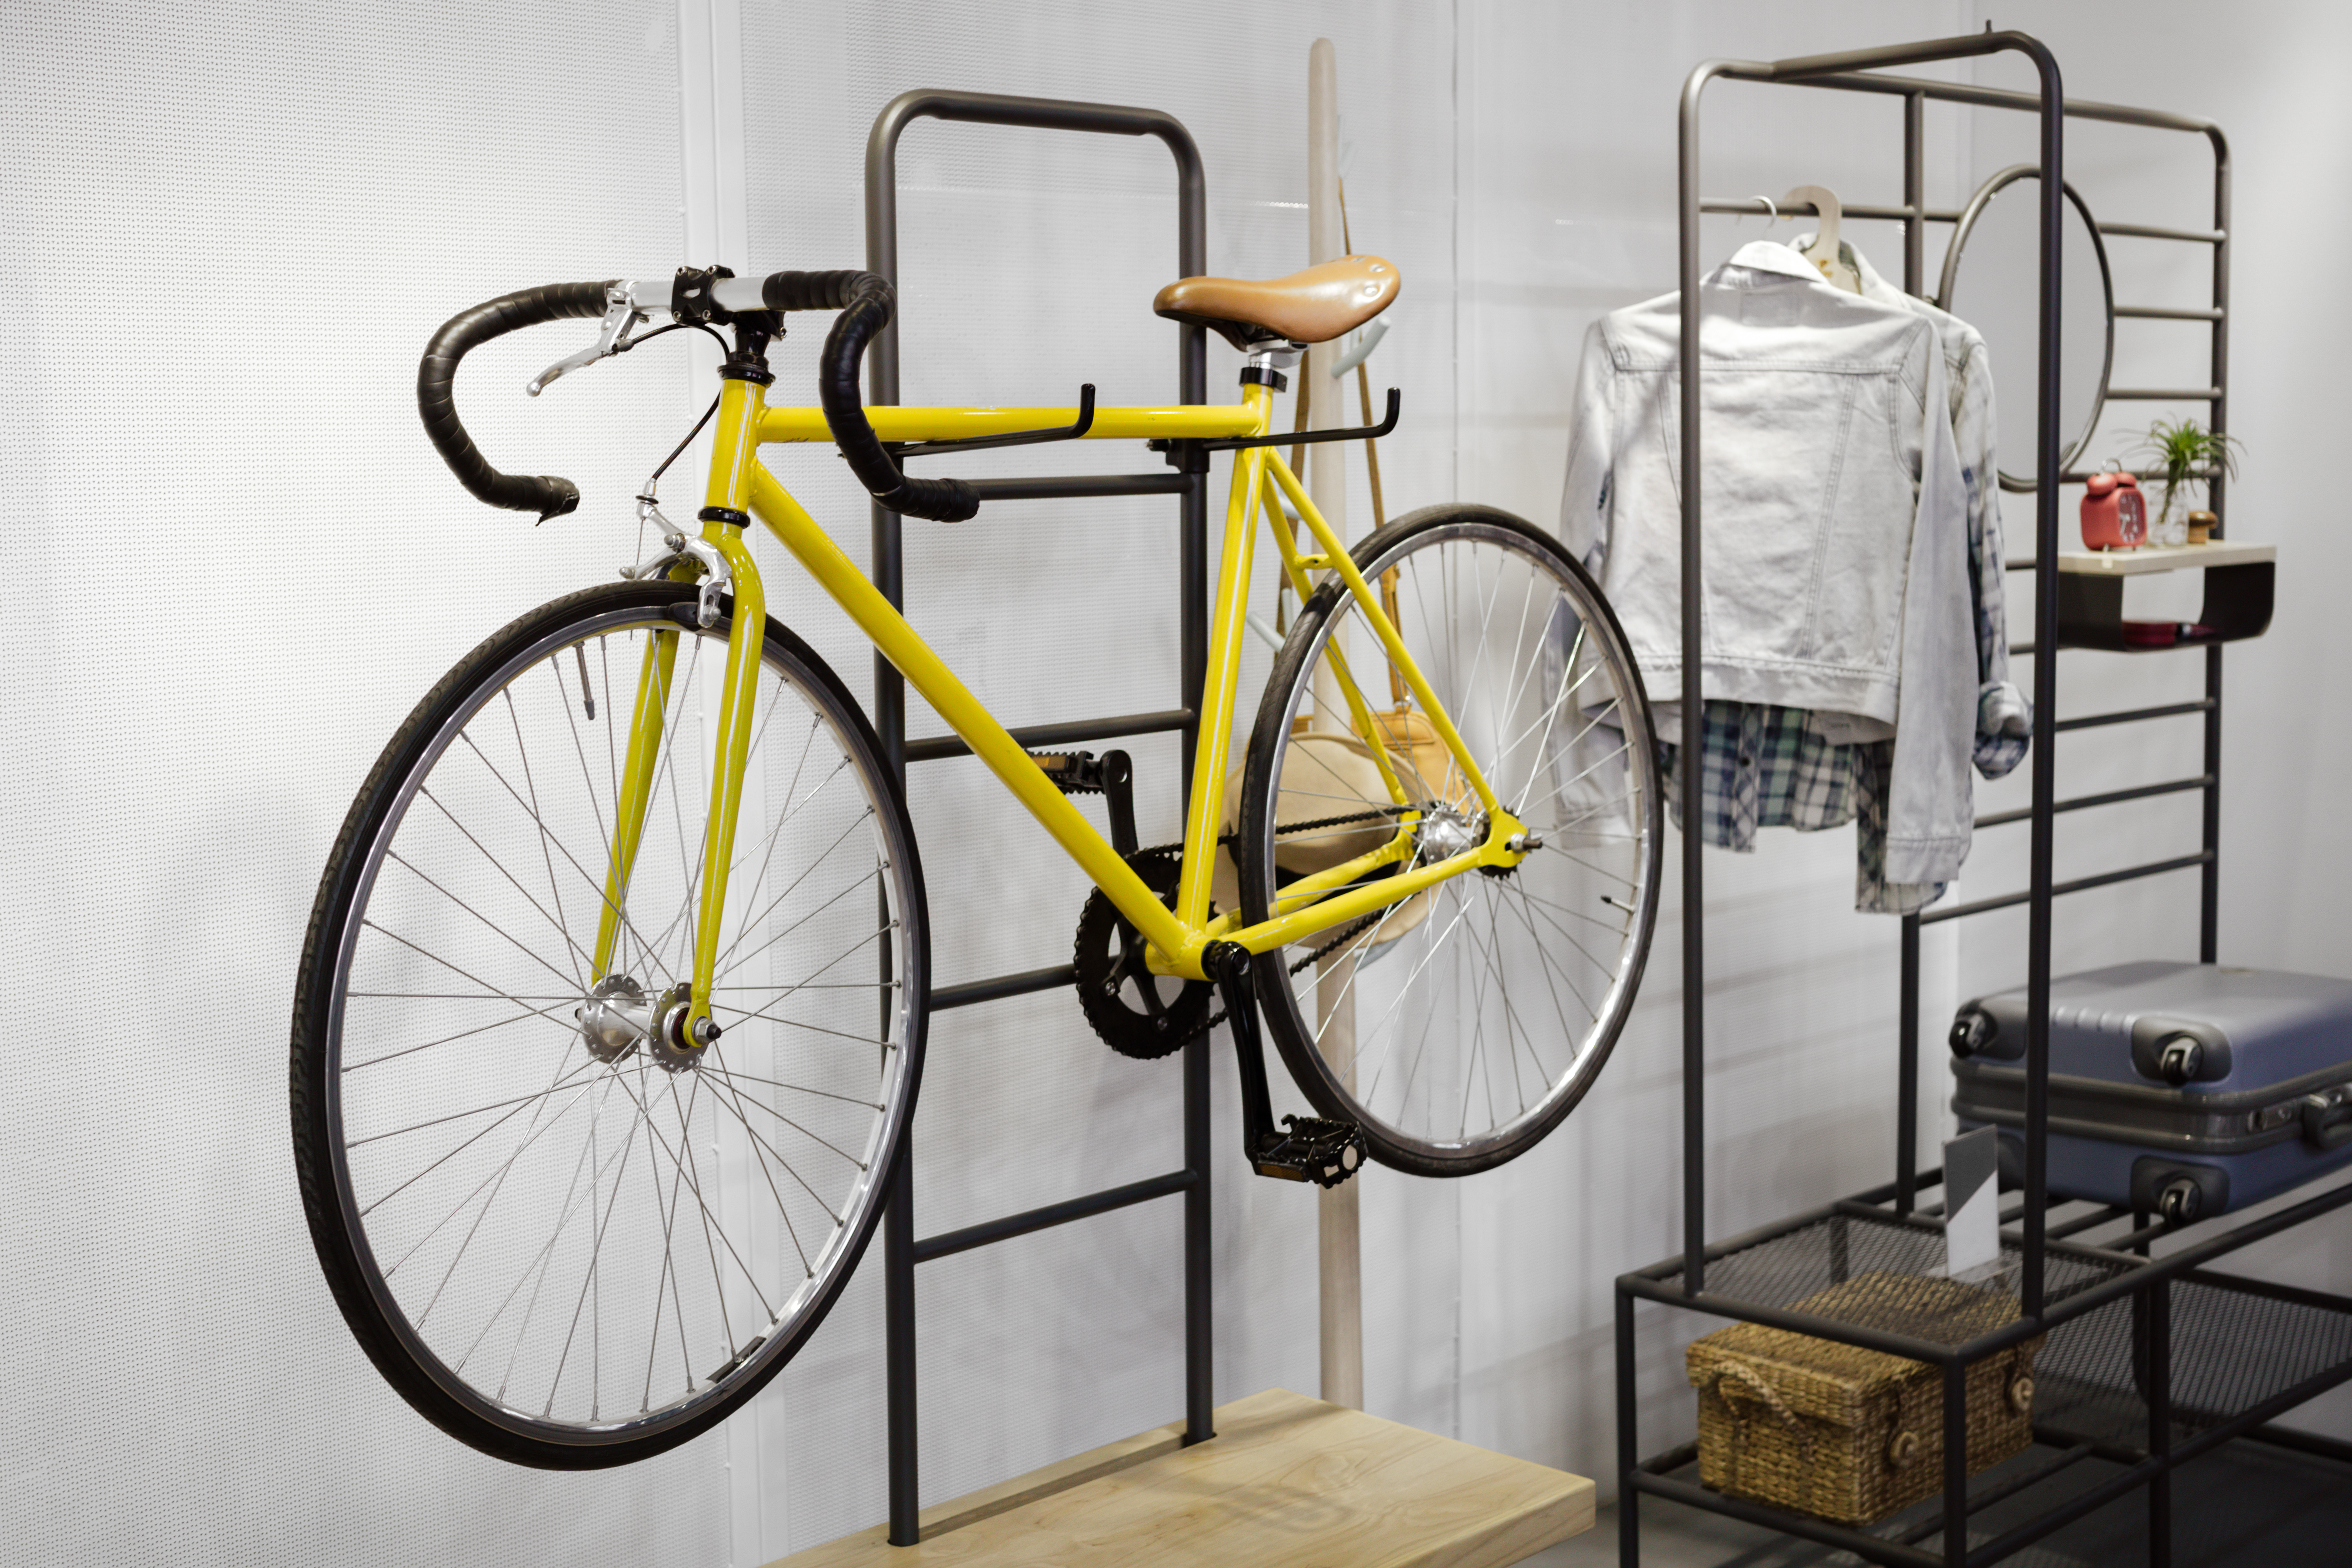 15 Best Garage Bike Storage Ideas To, Garage Ceiling Bike Storage Ideas